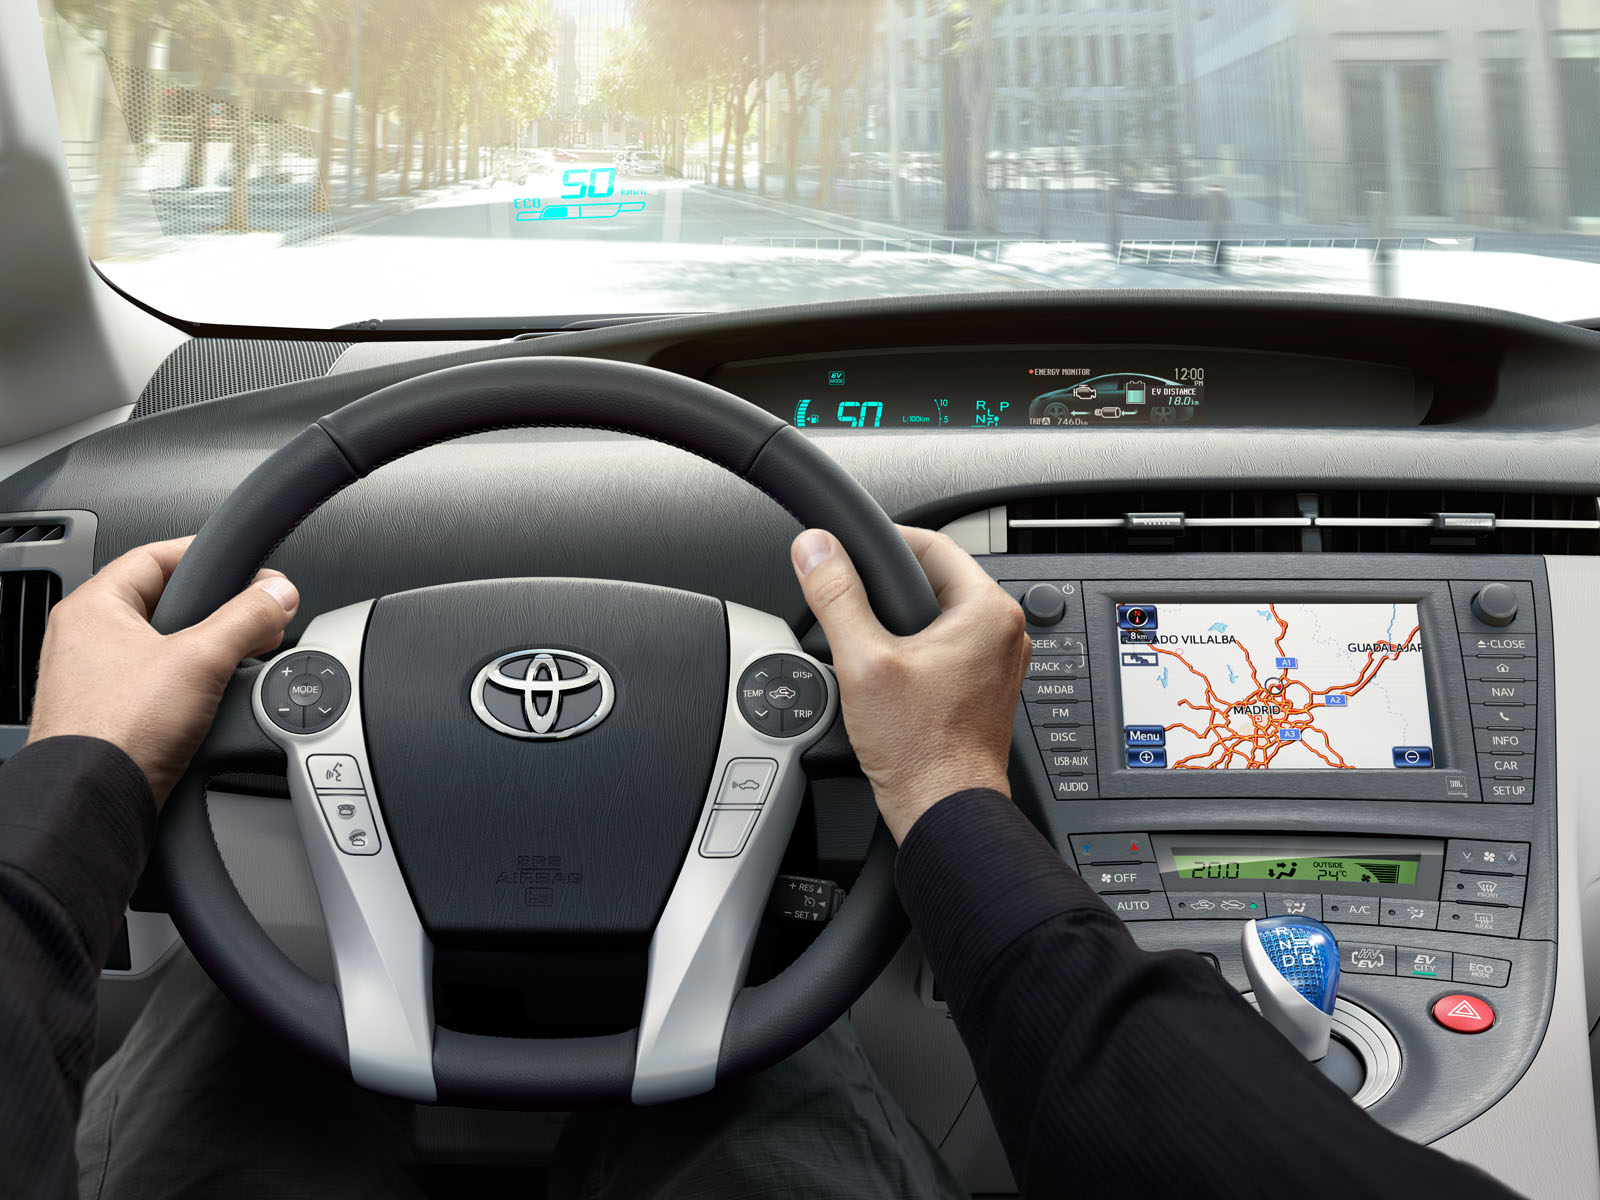 Prije tačno 15 godina nastala je Toyota Prius, Life.ba